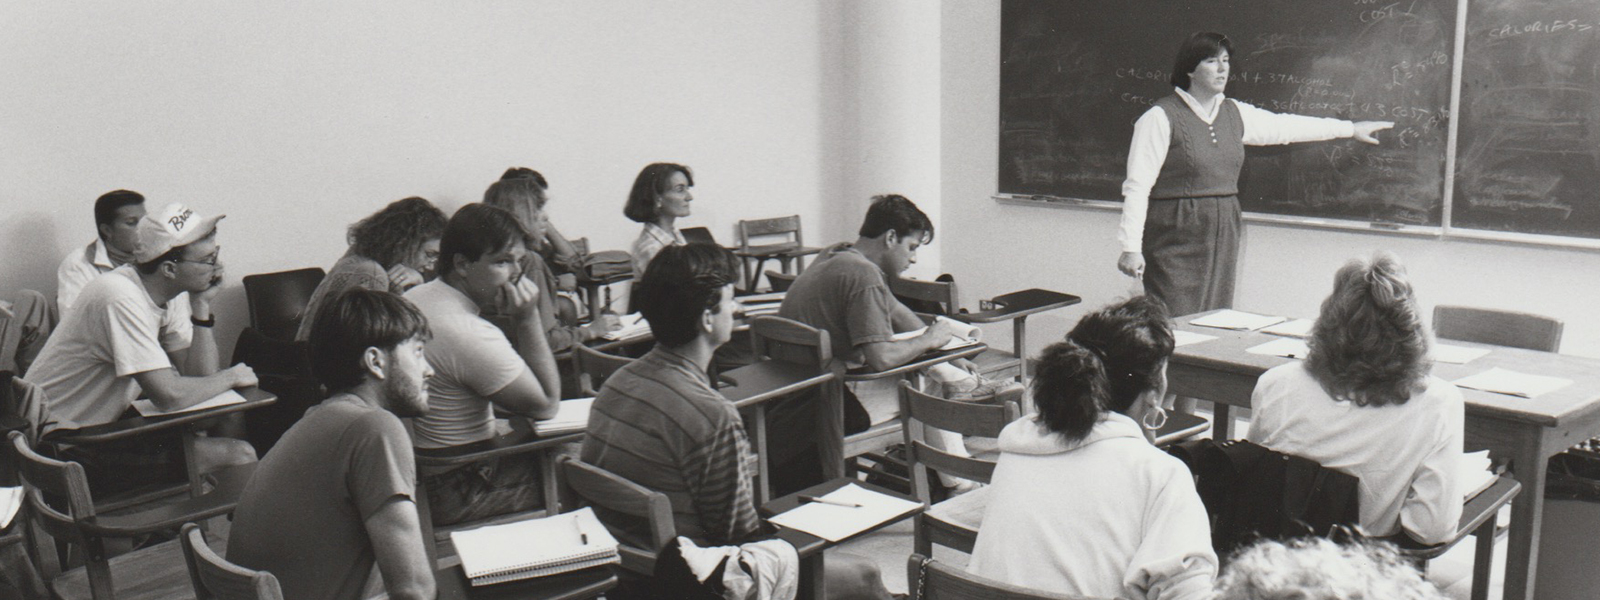 CU Denver classroom, circa 1990s